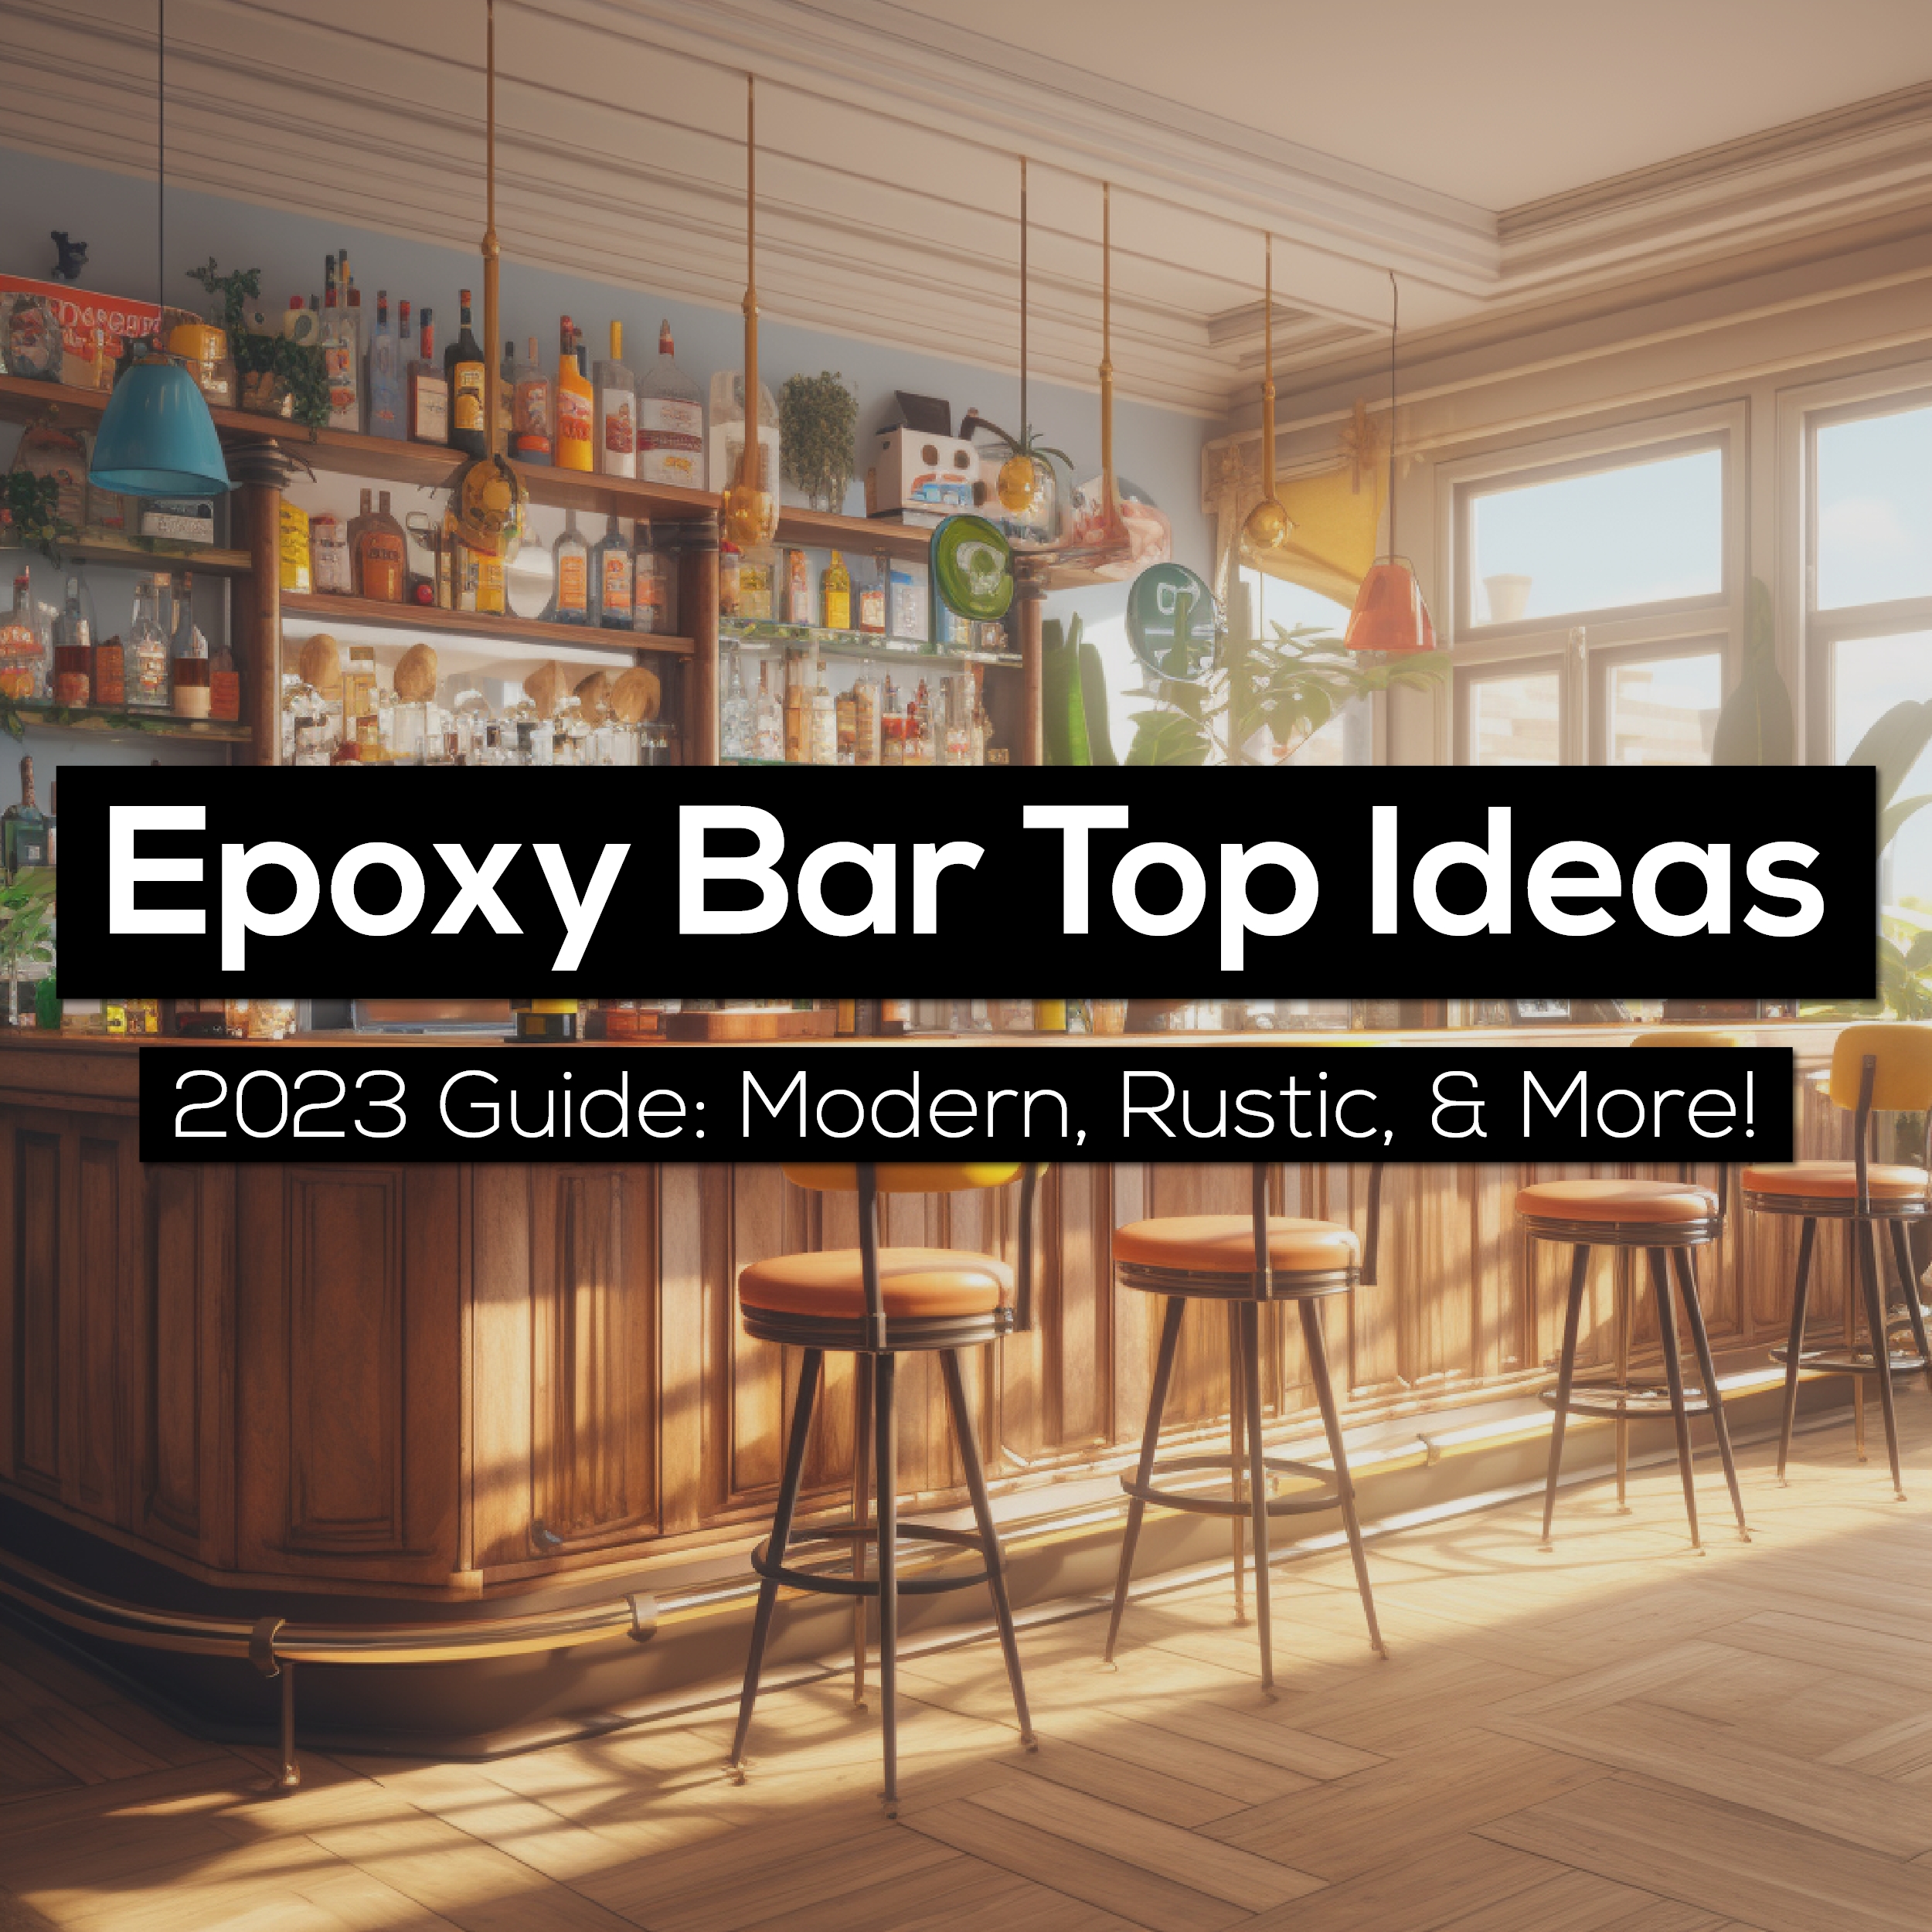 epoxy bar top ideas guide 2023